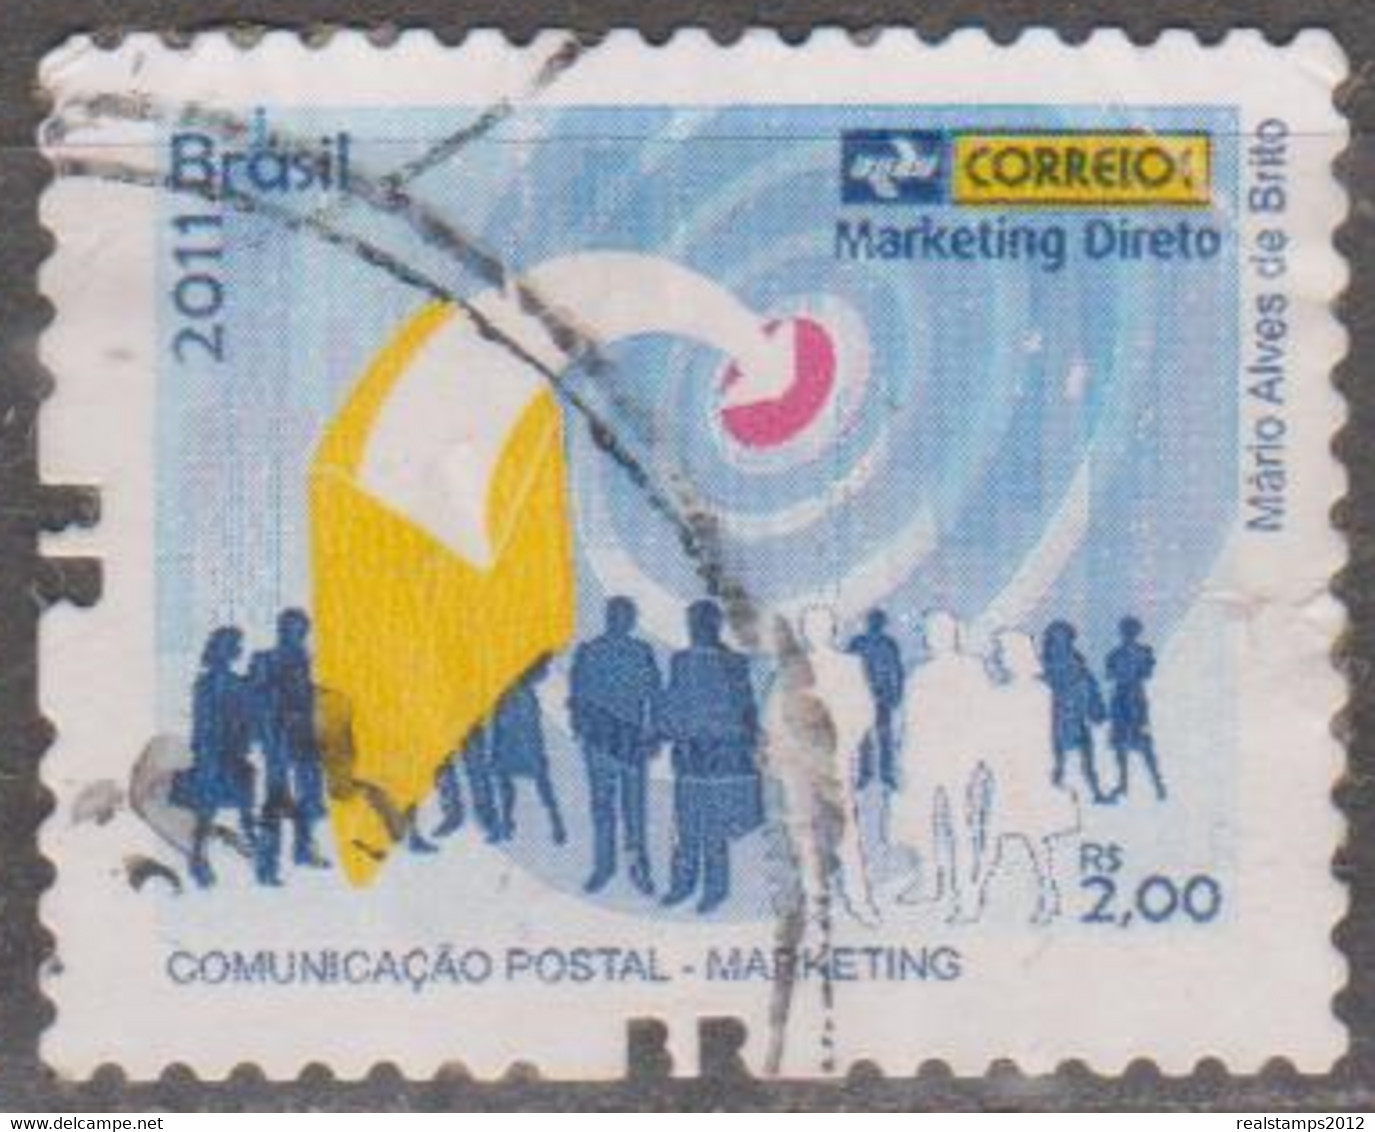 Brasil - 2011 - Comunicação Postal - Marketing   - Marketing Direto  R$ 2,00 (o)  RHM Nº - Used Stamps